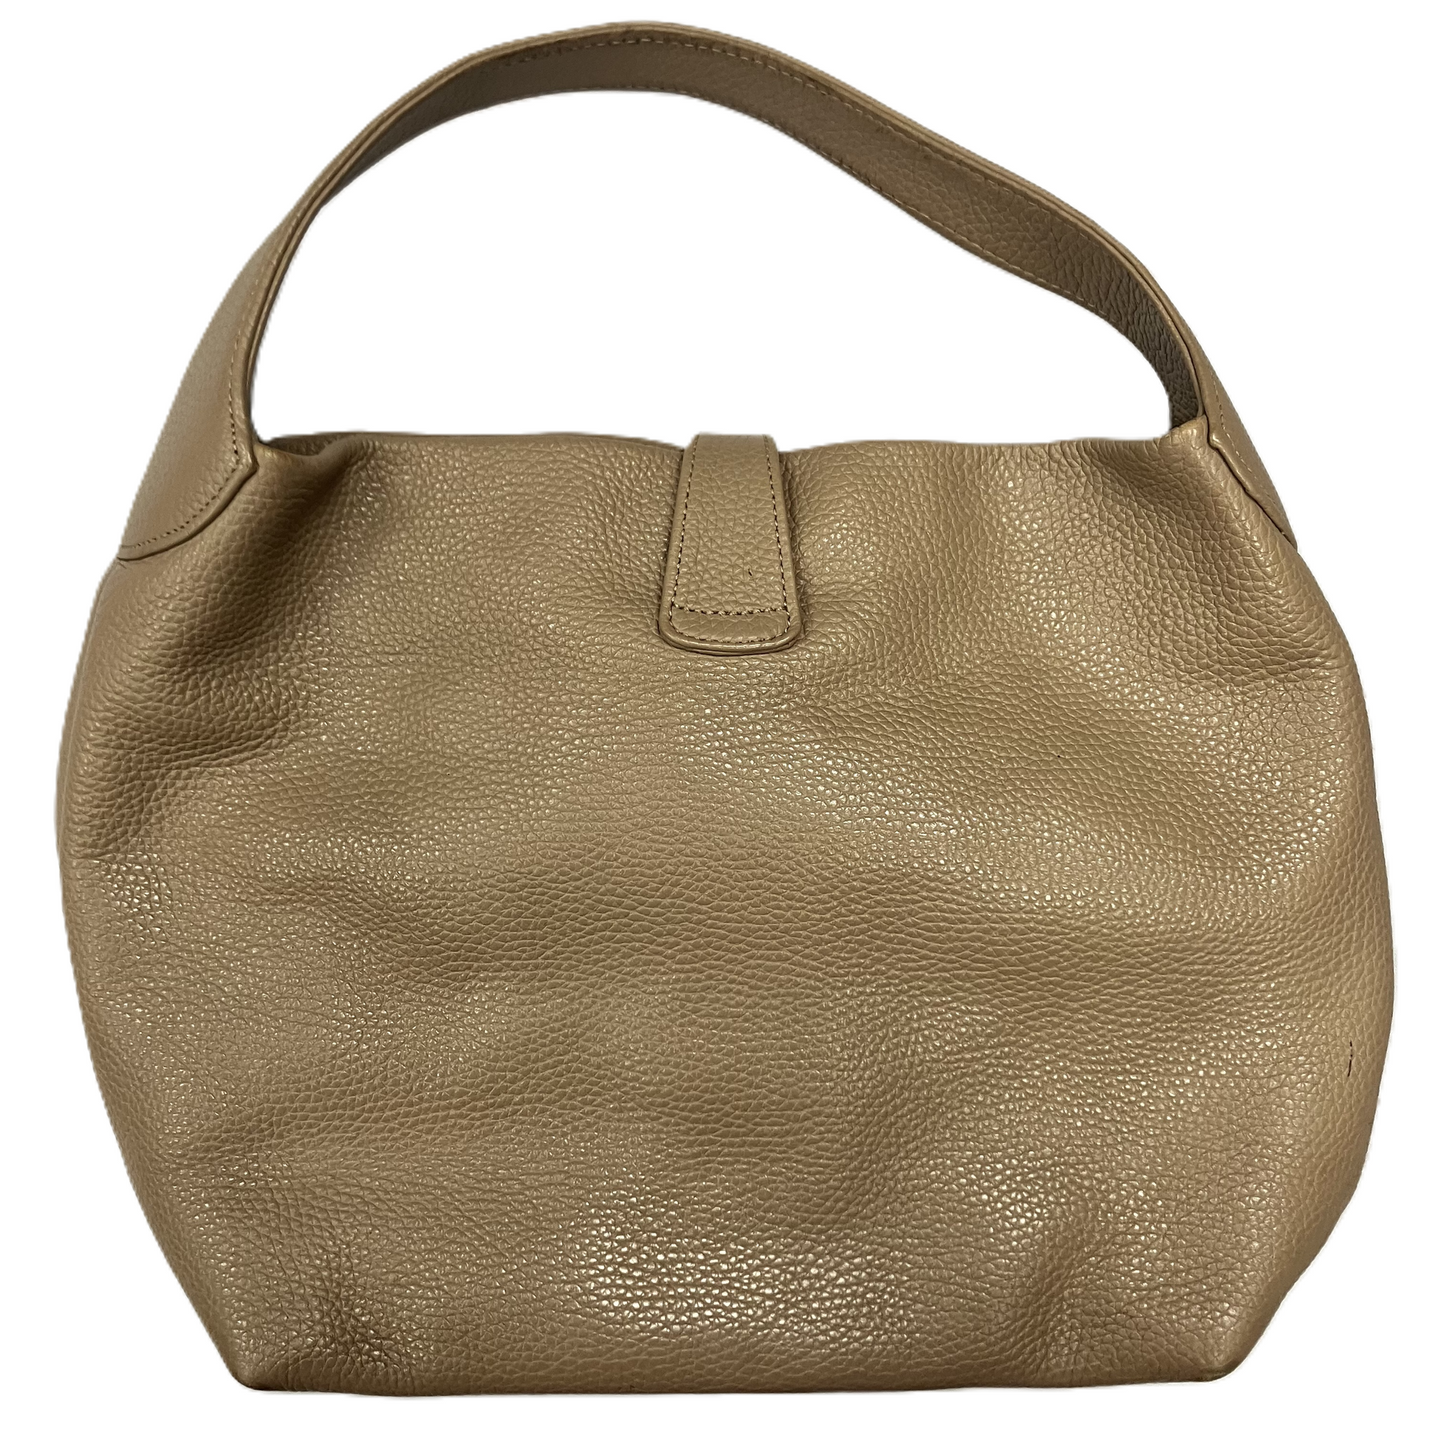 Handbag Designer By Dooney And Bourke, Size: Large